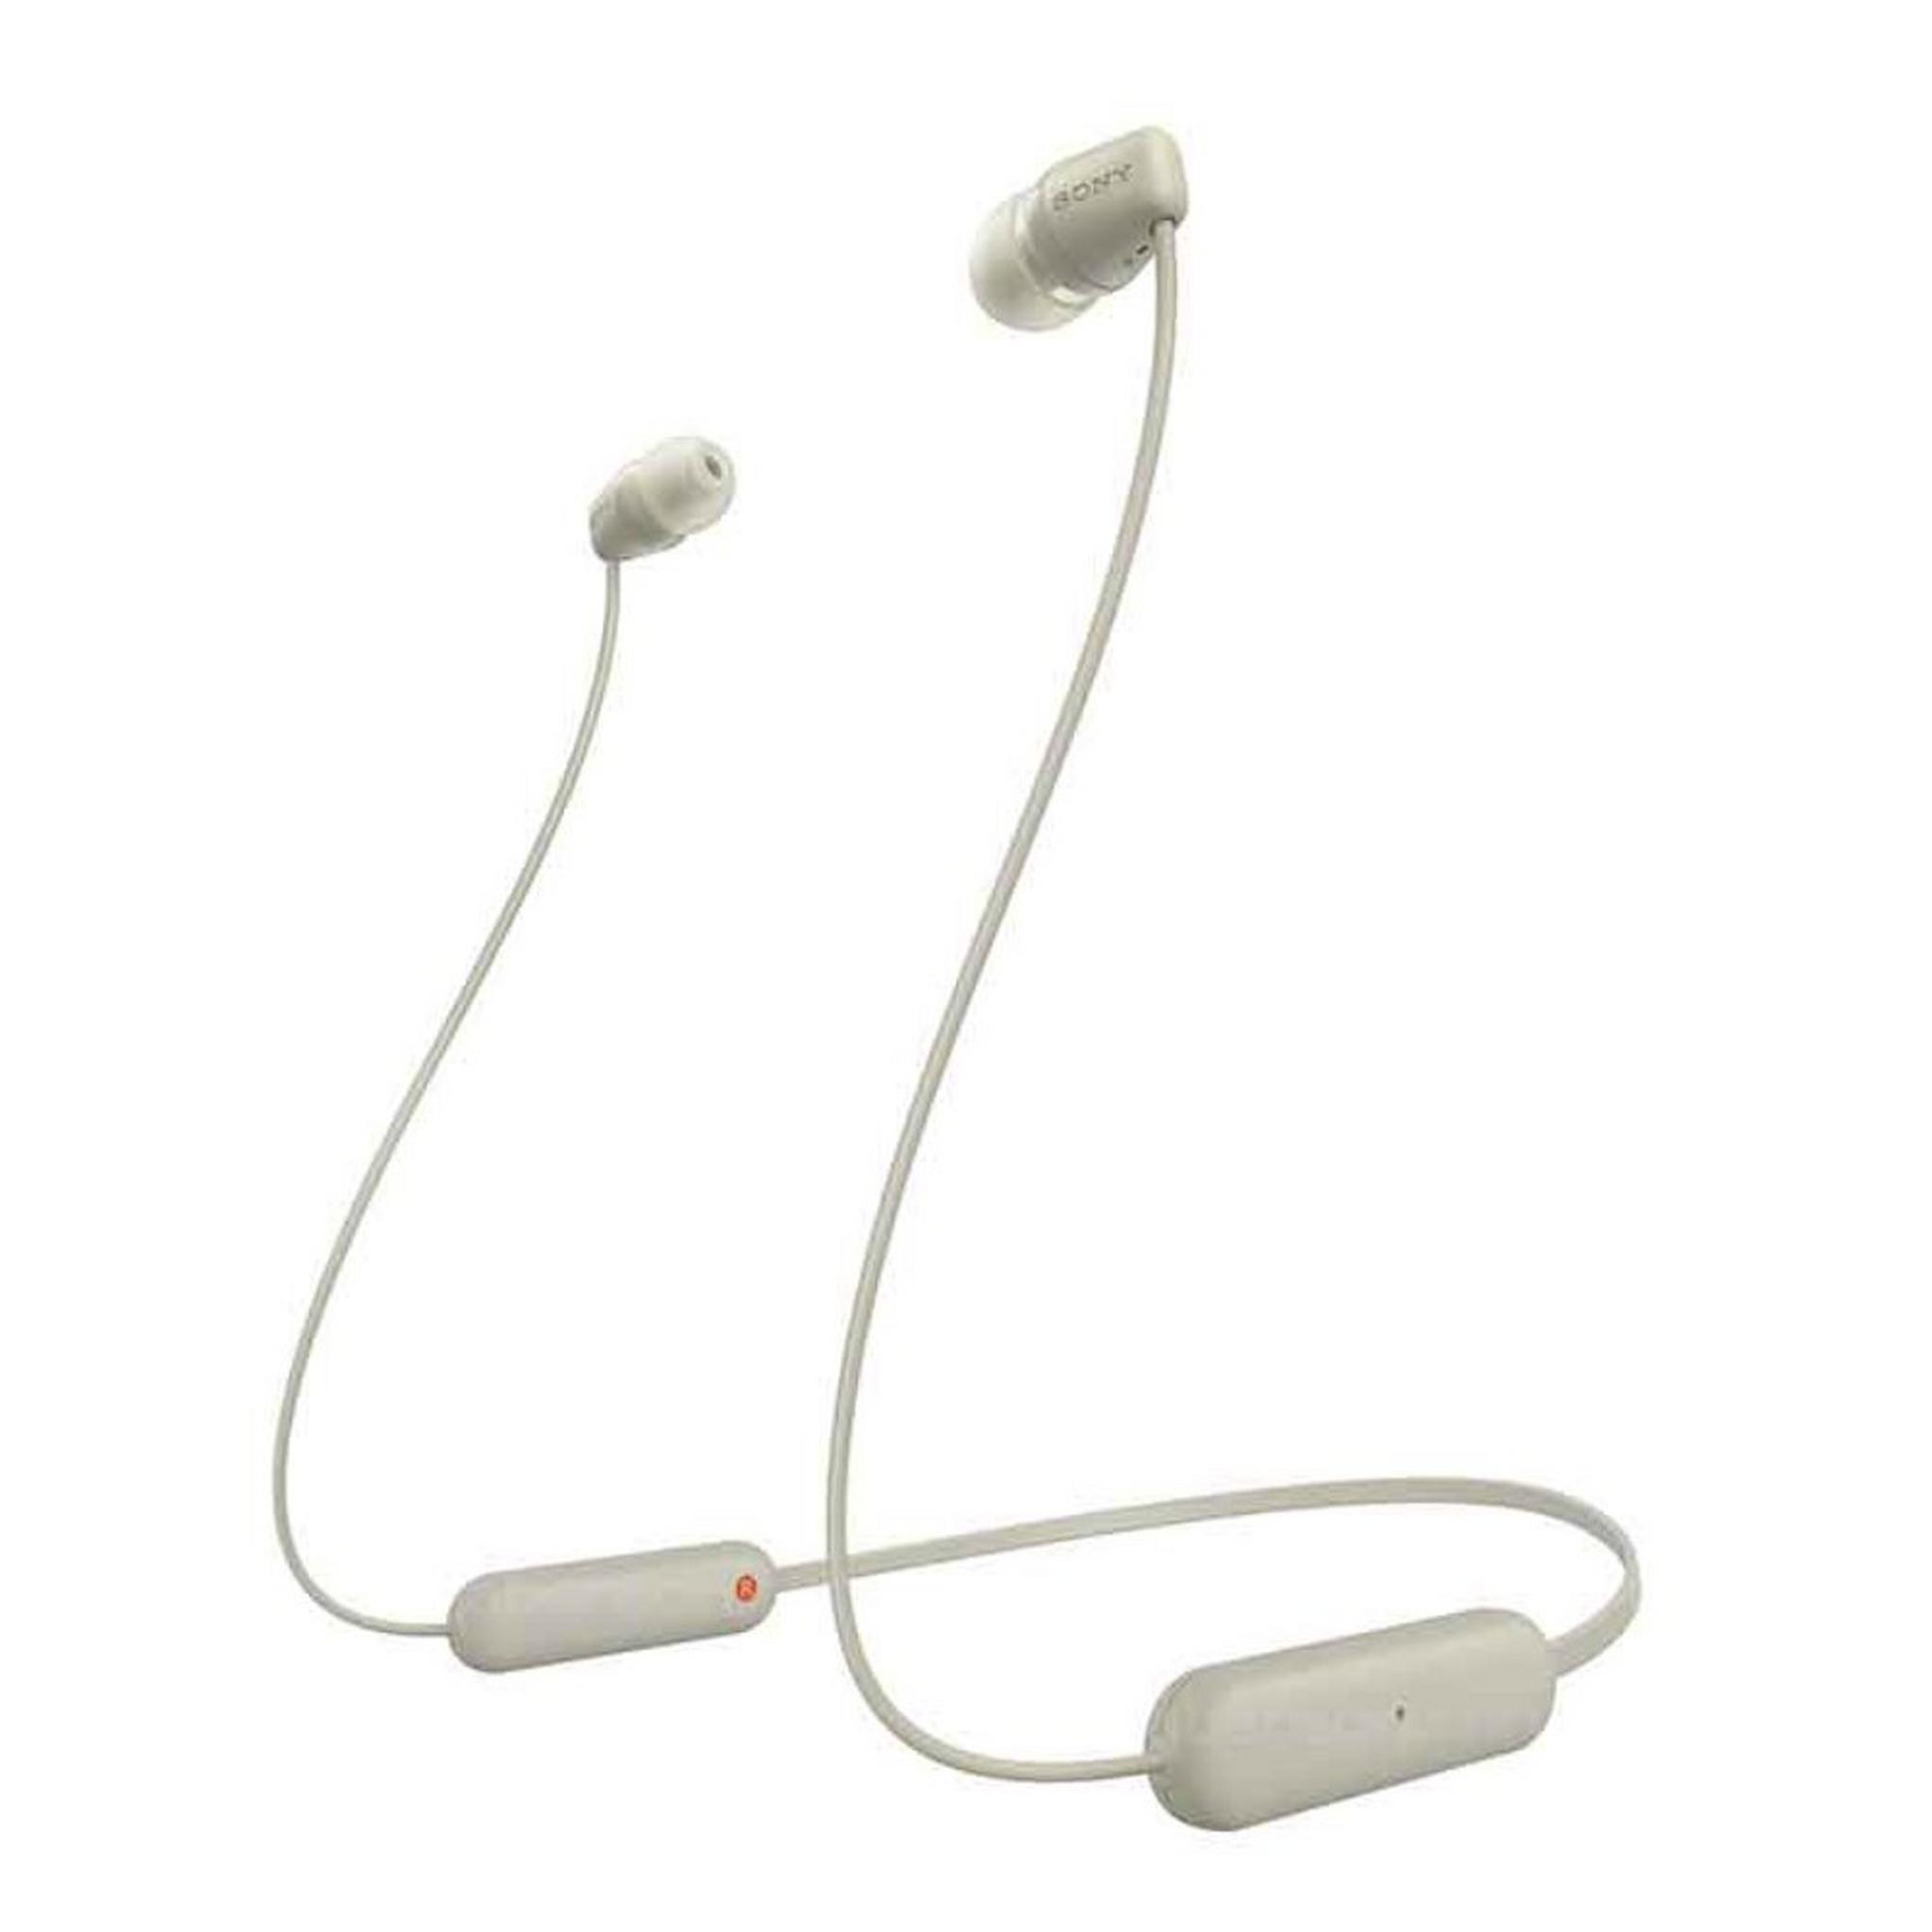 Sony Wireless In Ear Bluetooth Earphones With Mic | Cream